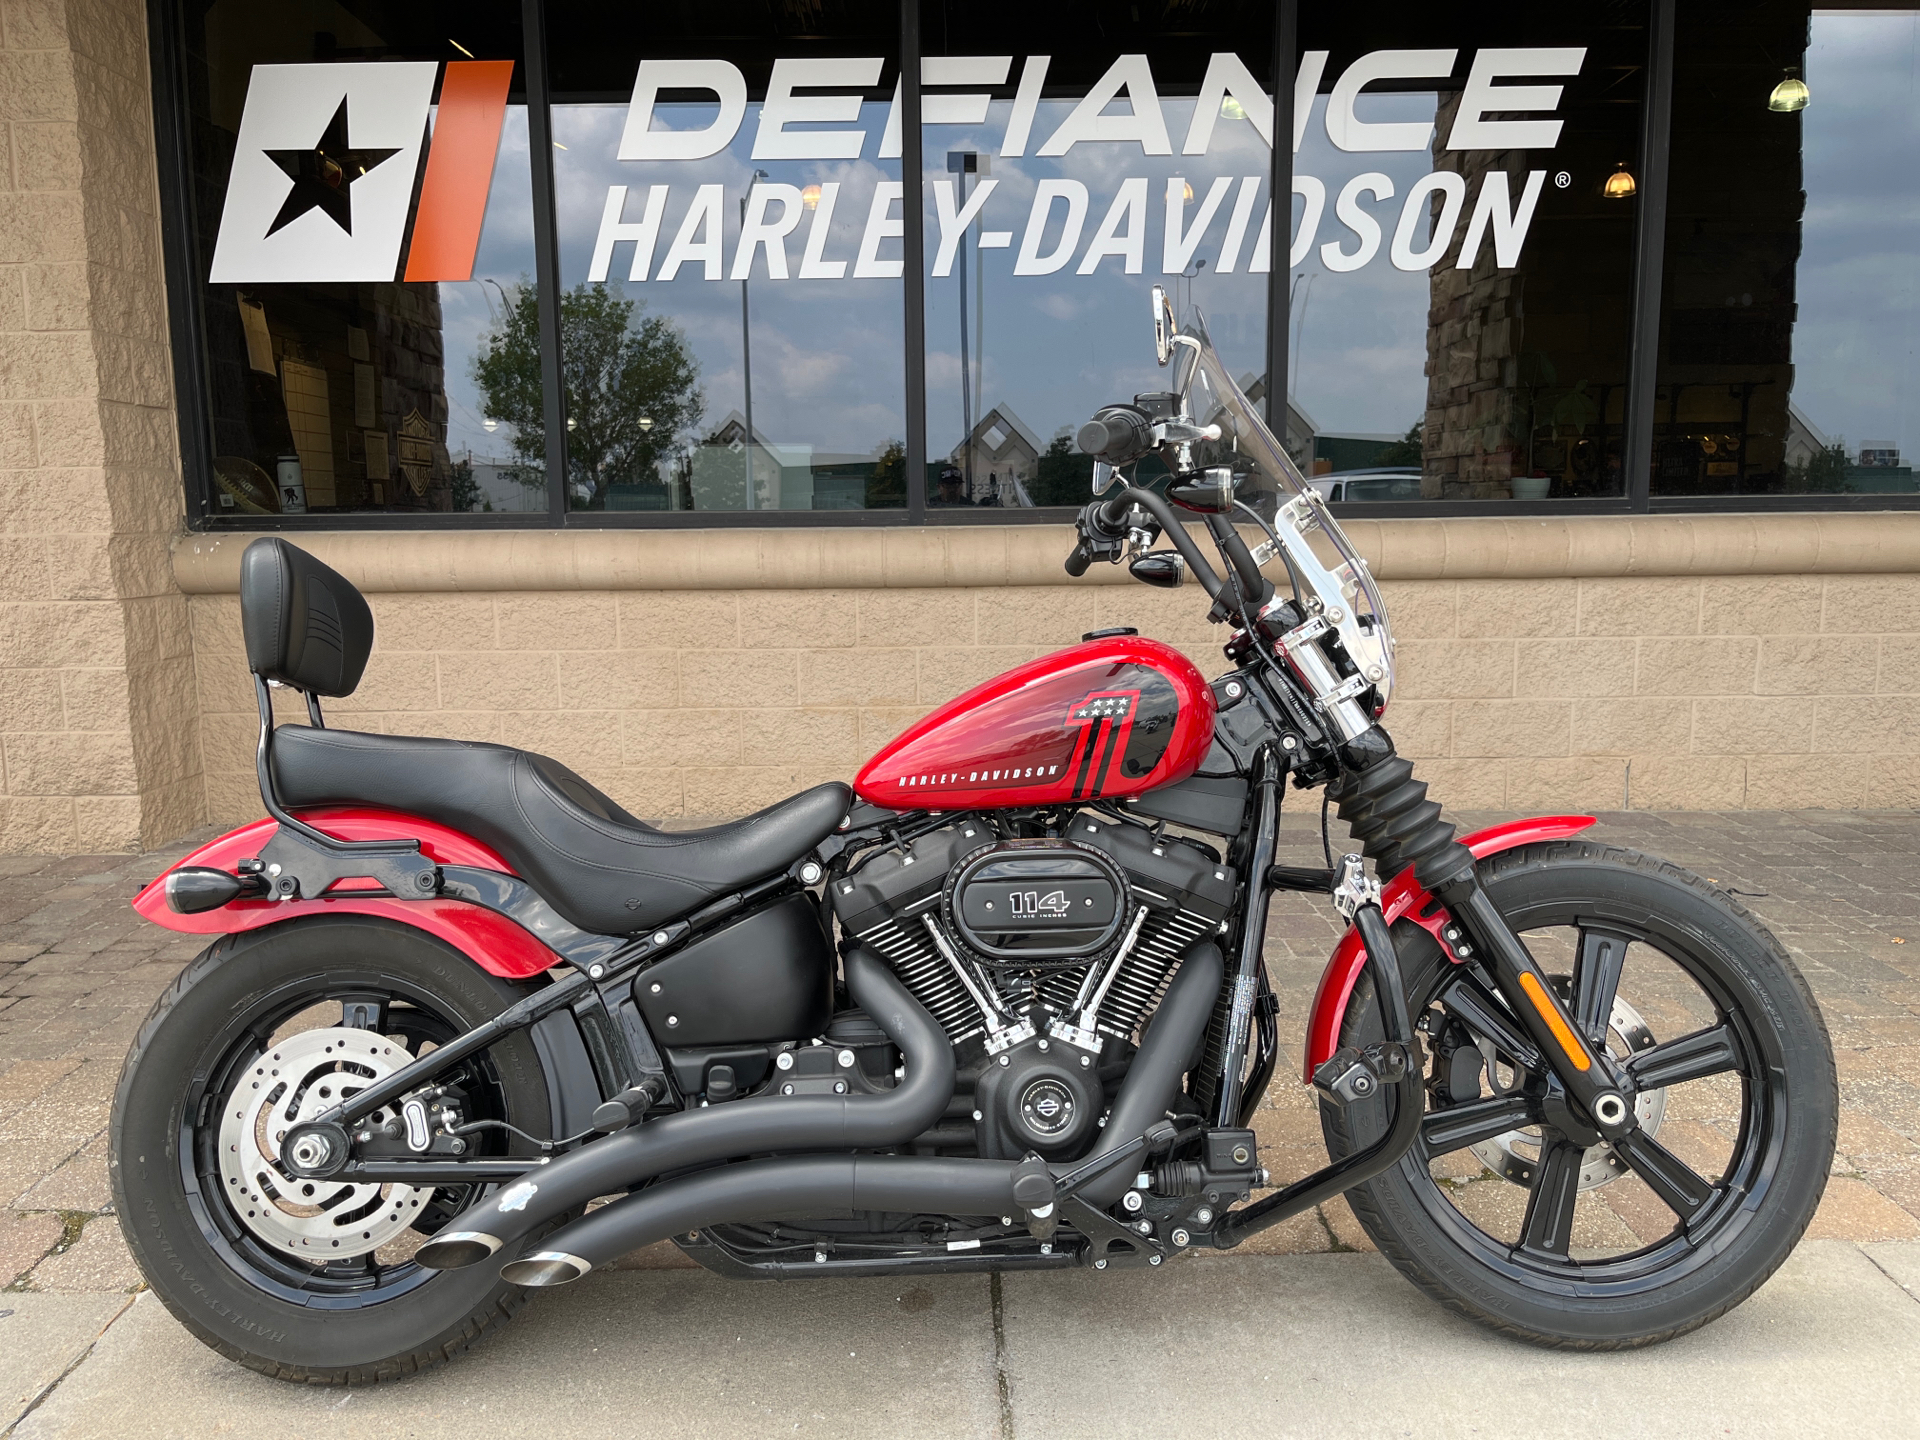 2022 Harley-Davidson Street Bob® 114 in Omaha, Nebraska - Photo 1